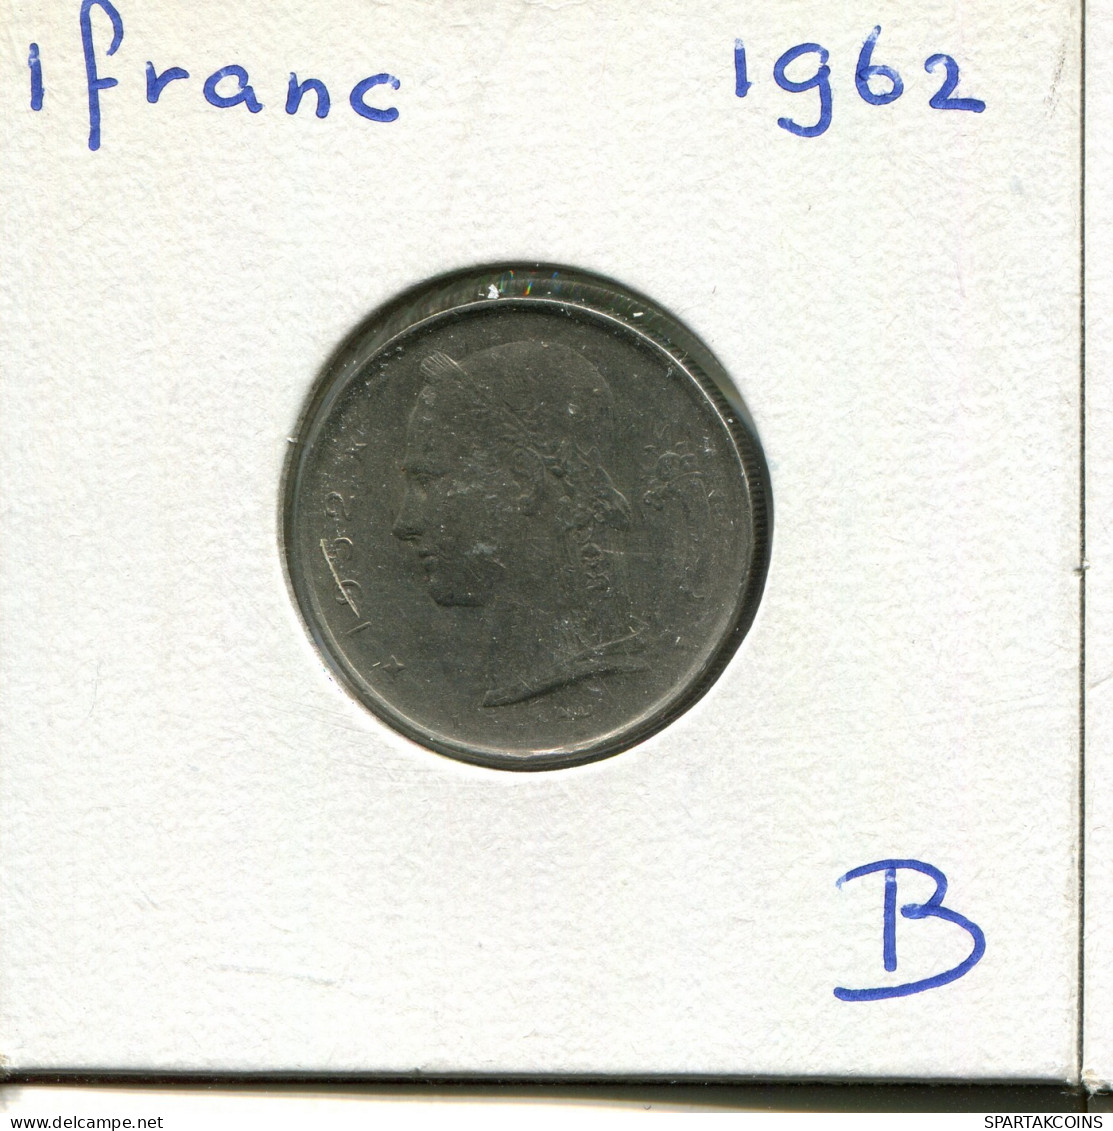 1 FRANC 1962 Französisch Text BELGIEN BELGIUM Münze #AW890.D.A - 1 Franc